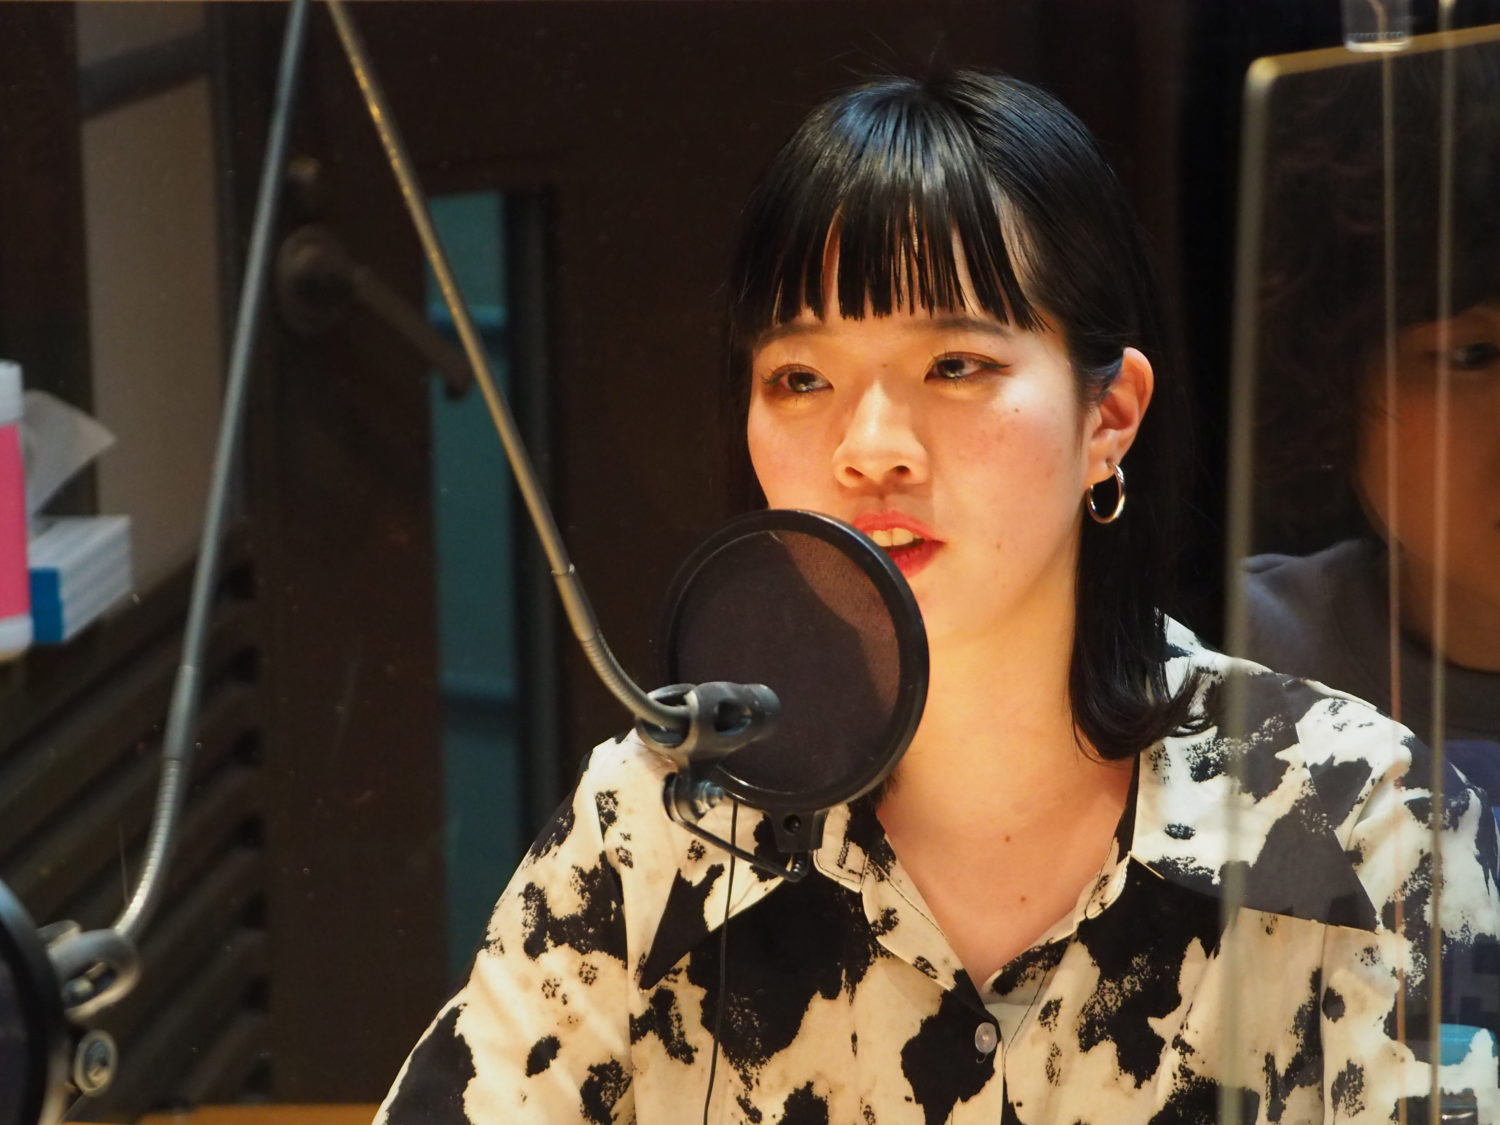 コピーバンドをやりたい。それがSHISHAMOにも返ってくる」ボーカル・宮崎朝子が語った現在の野望 (2021年3月10日) - エキサイトニュース